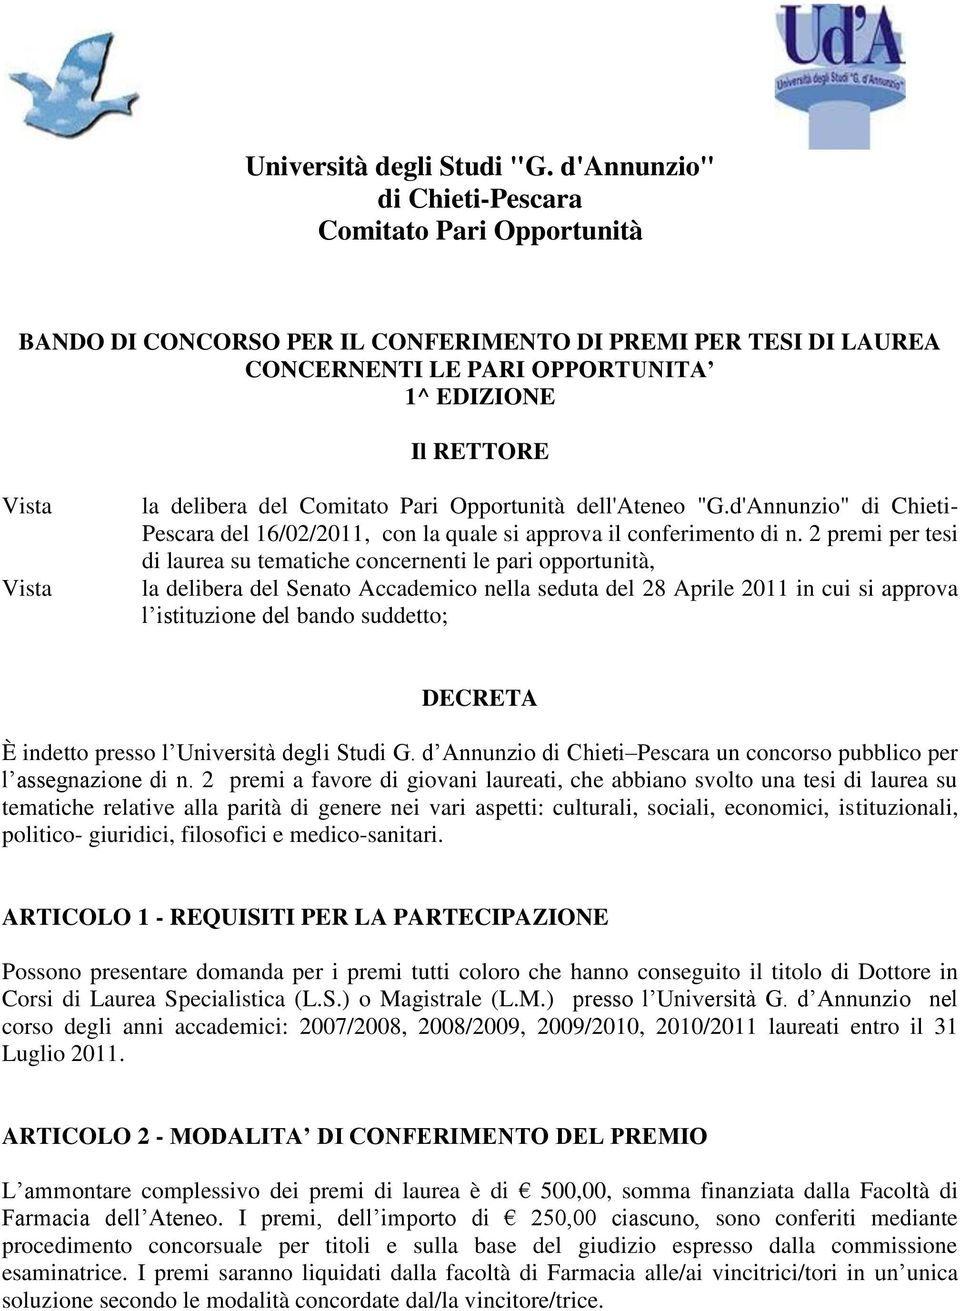 delibera del Comitato Pari Opportunità dell'ateneo "G.d'Annunzio" di Chieti- Pescara del 16/02/2011, con la quale si approva il conferimento di n.